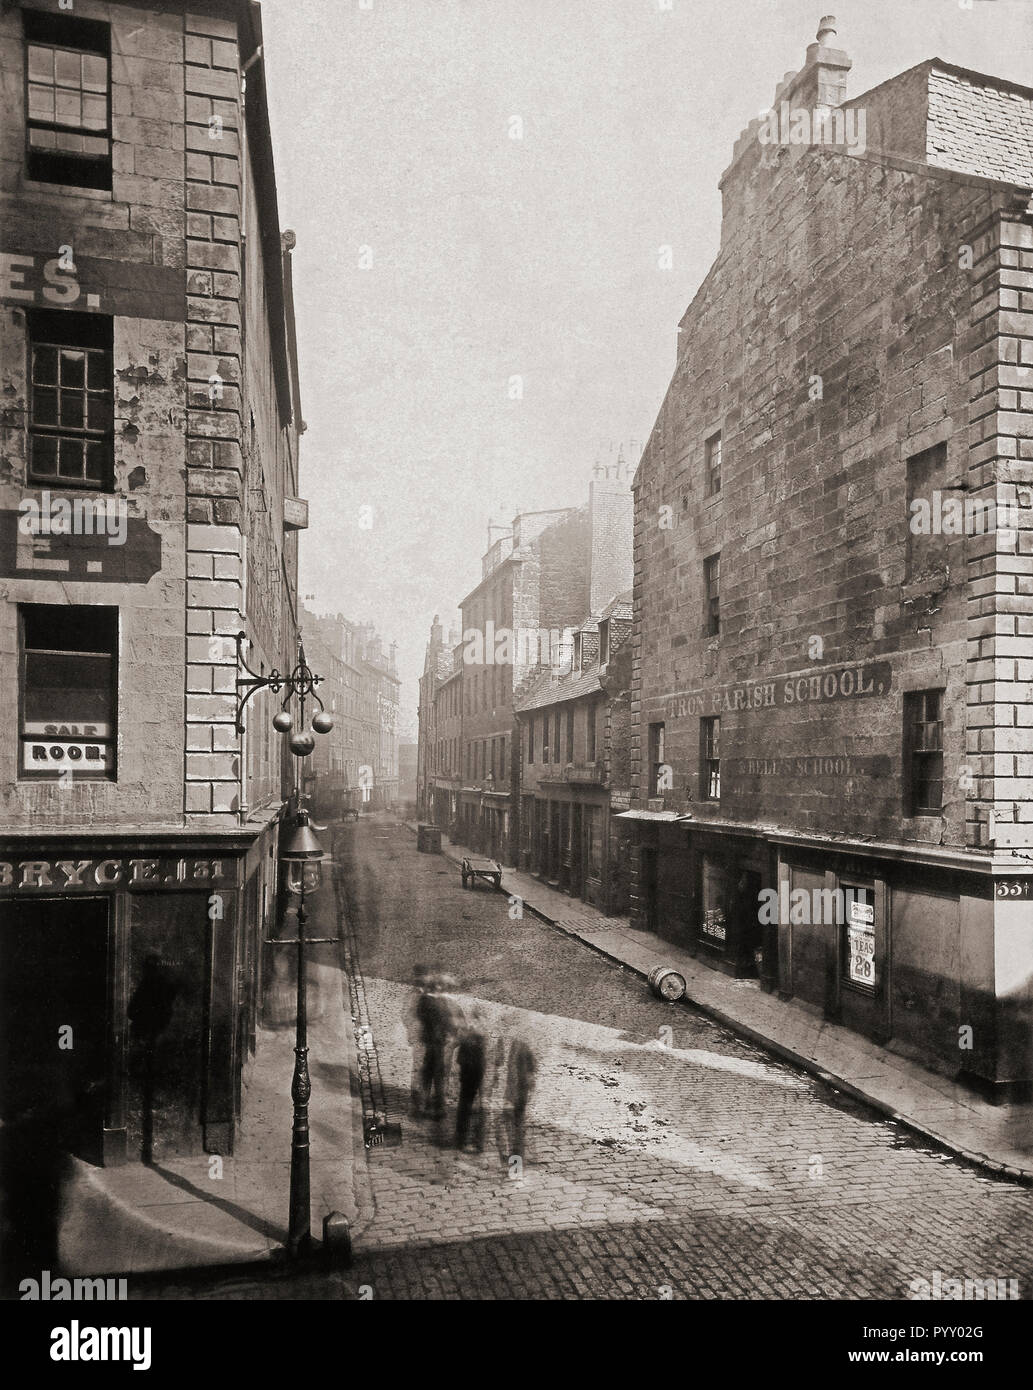 Princes Street vu de King Street, Glasgow, Écosse dans les années 1870. Photographie de l'ancienne ferme et les rues de Glasgow, par le photographe écossais Thomas Annan 1829-1887. Banque D'Images